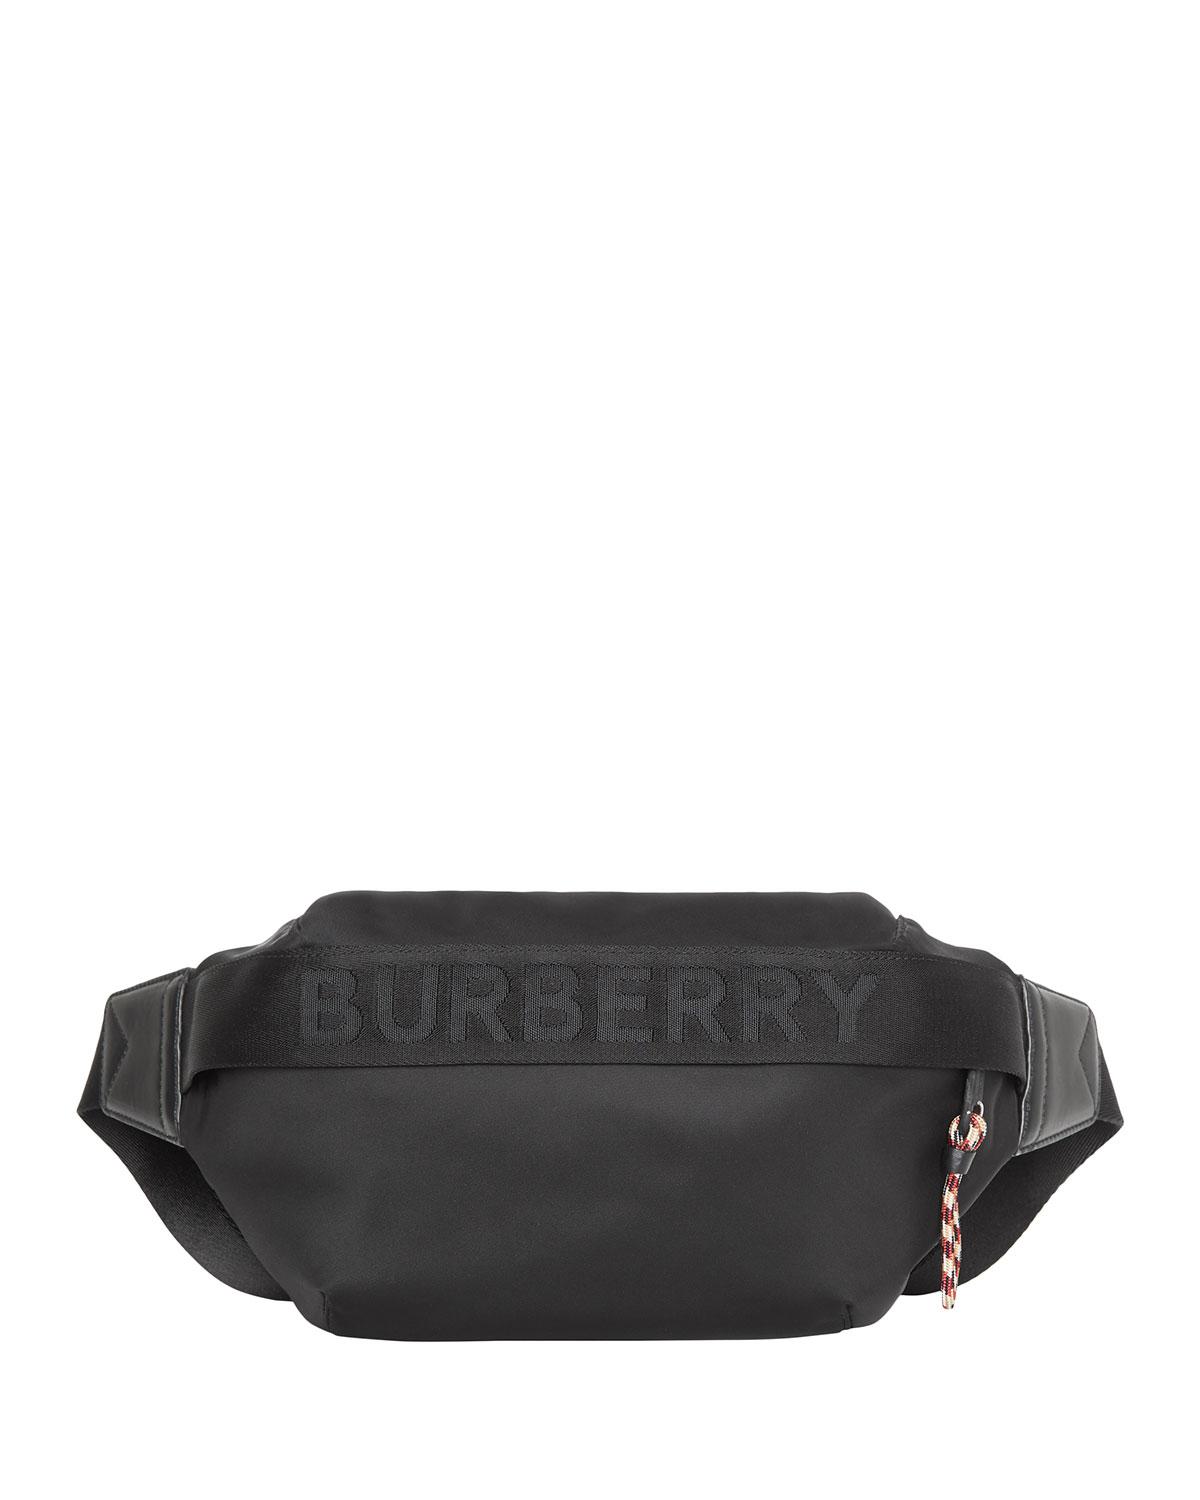 burberry bum bag mens